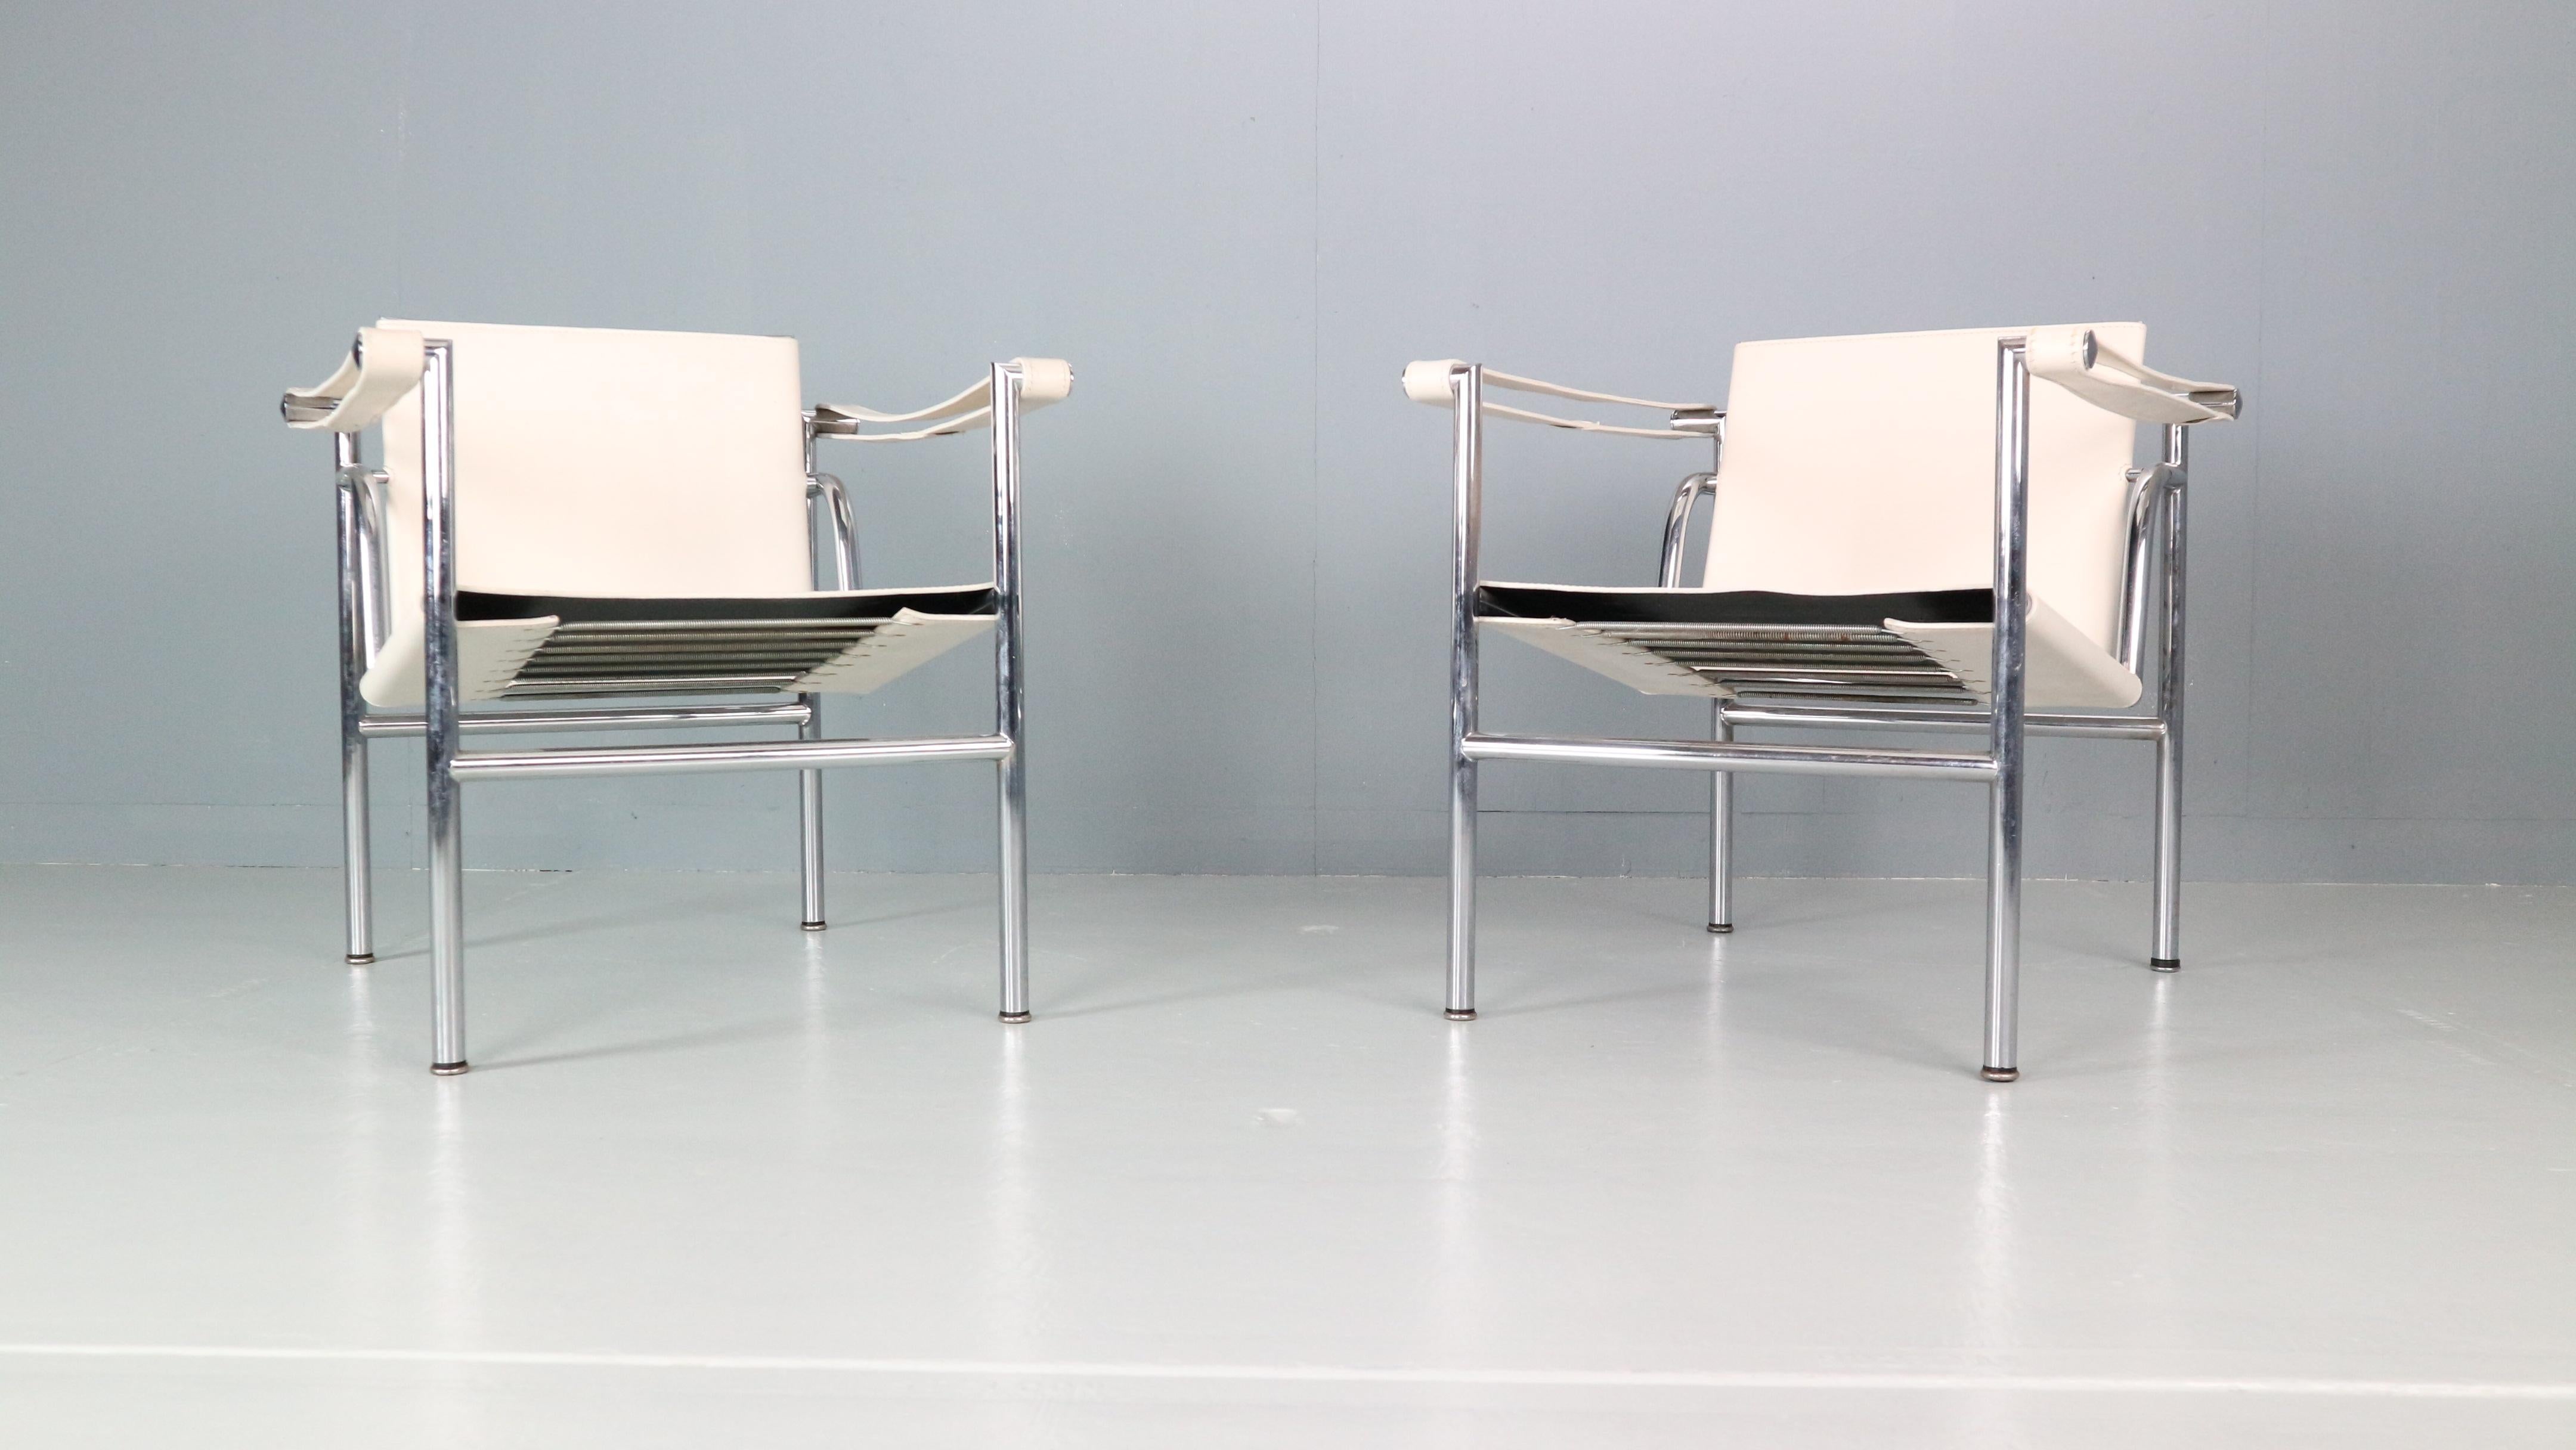 Satz von 2 Sesseln, entworfen von Le Corbusier und hergestellt für Cassina, berühmte italienische Möbelmanufaktur in den 1970er Jahren.
Beide Stühle sind original signiert, niedrige Zahl frühen Ausgabe. 
Modellnummer - LC1.
Verchromtes Rohrgestell